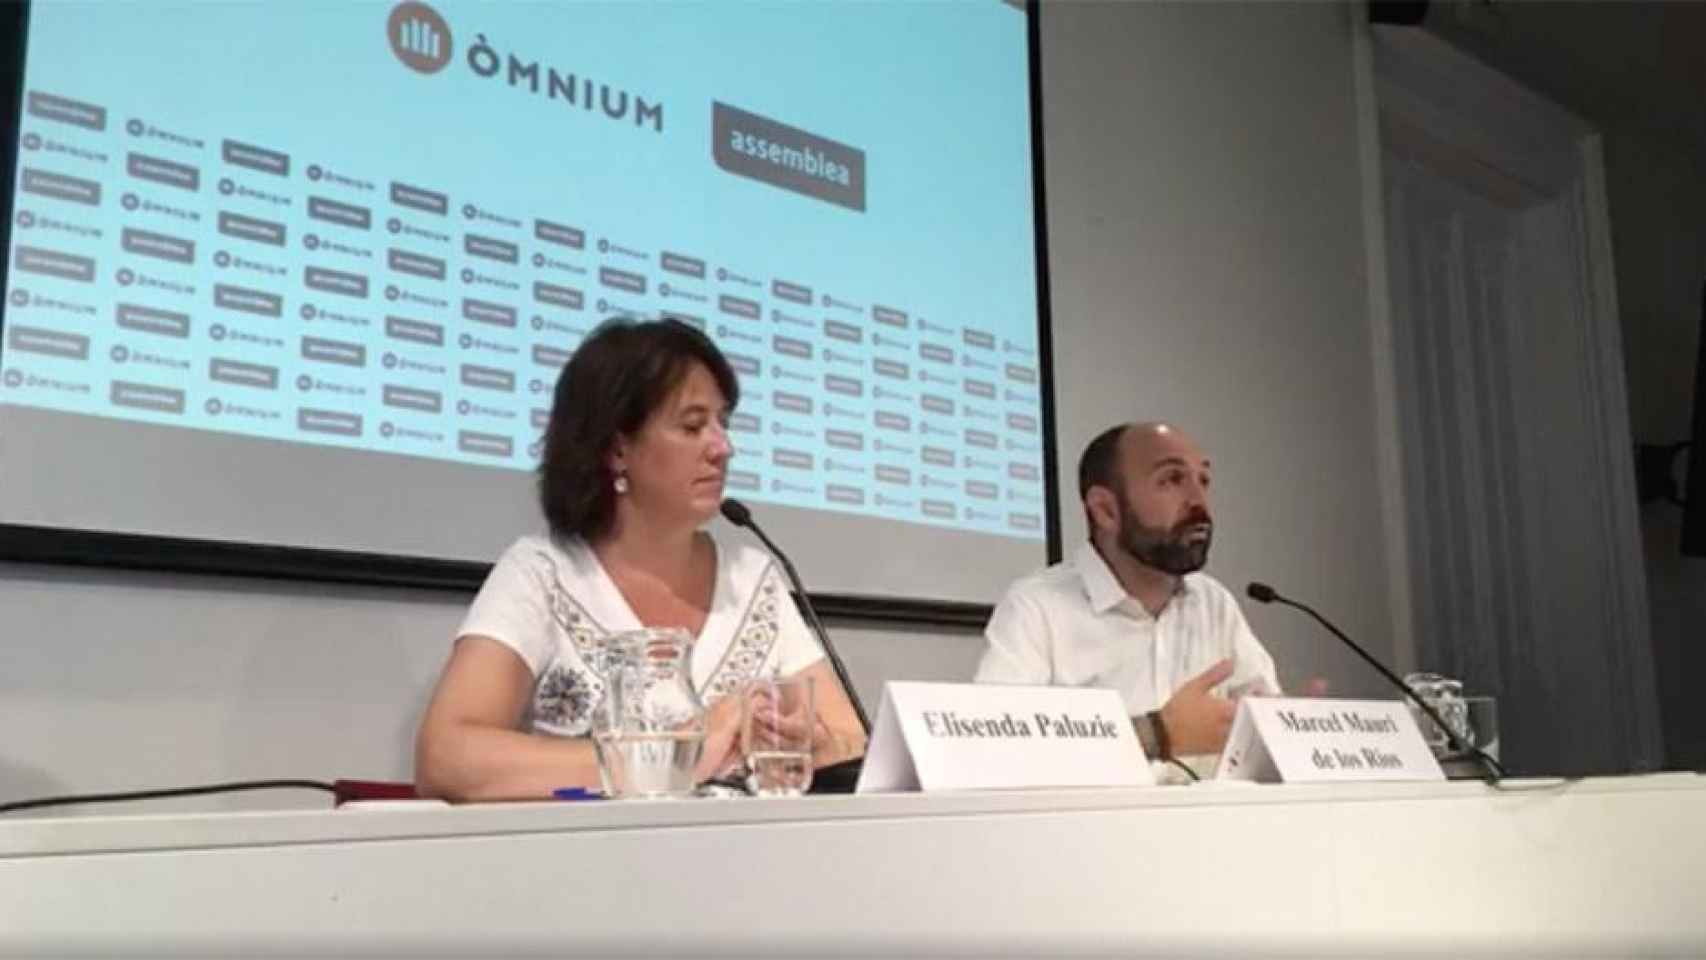 La presidenta de la Assemblea Nacional Catalana, Elisenda Paluzie, y el portavoz de Òmnium, Marcel Mauri / CG